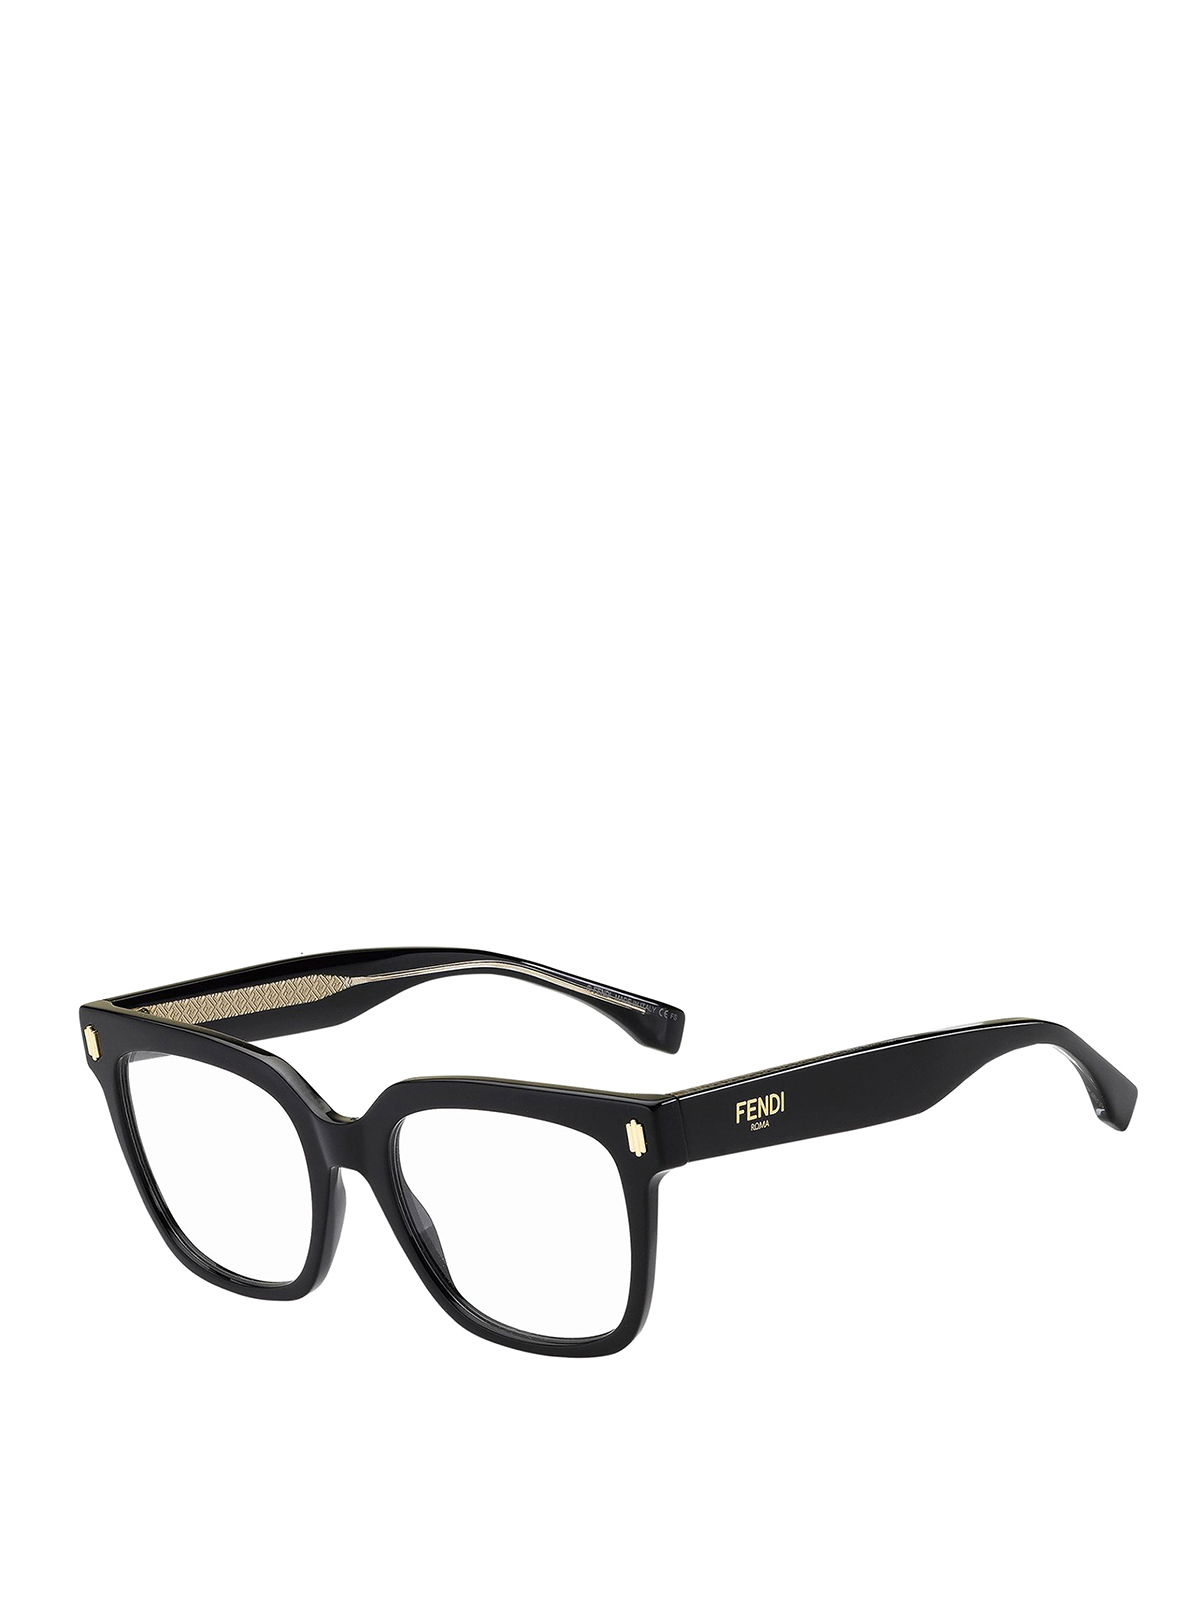 Fendi Roma Glasses In Black